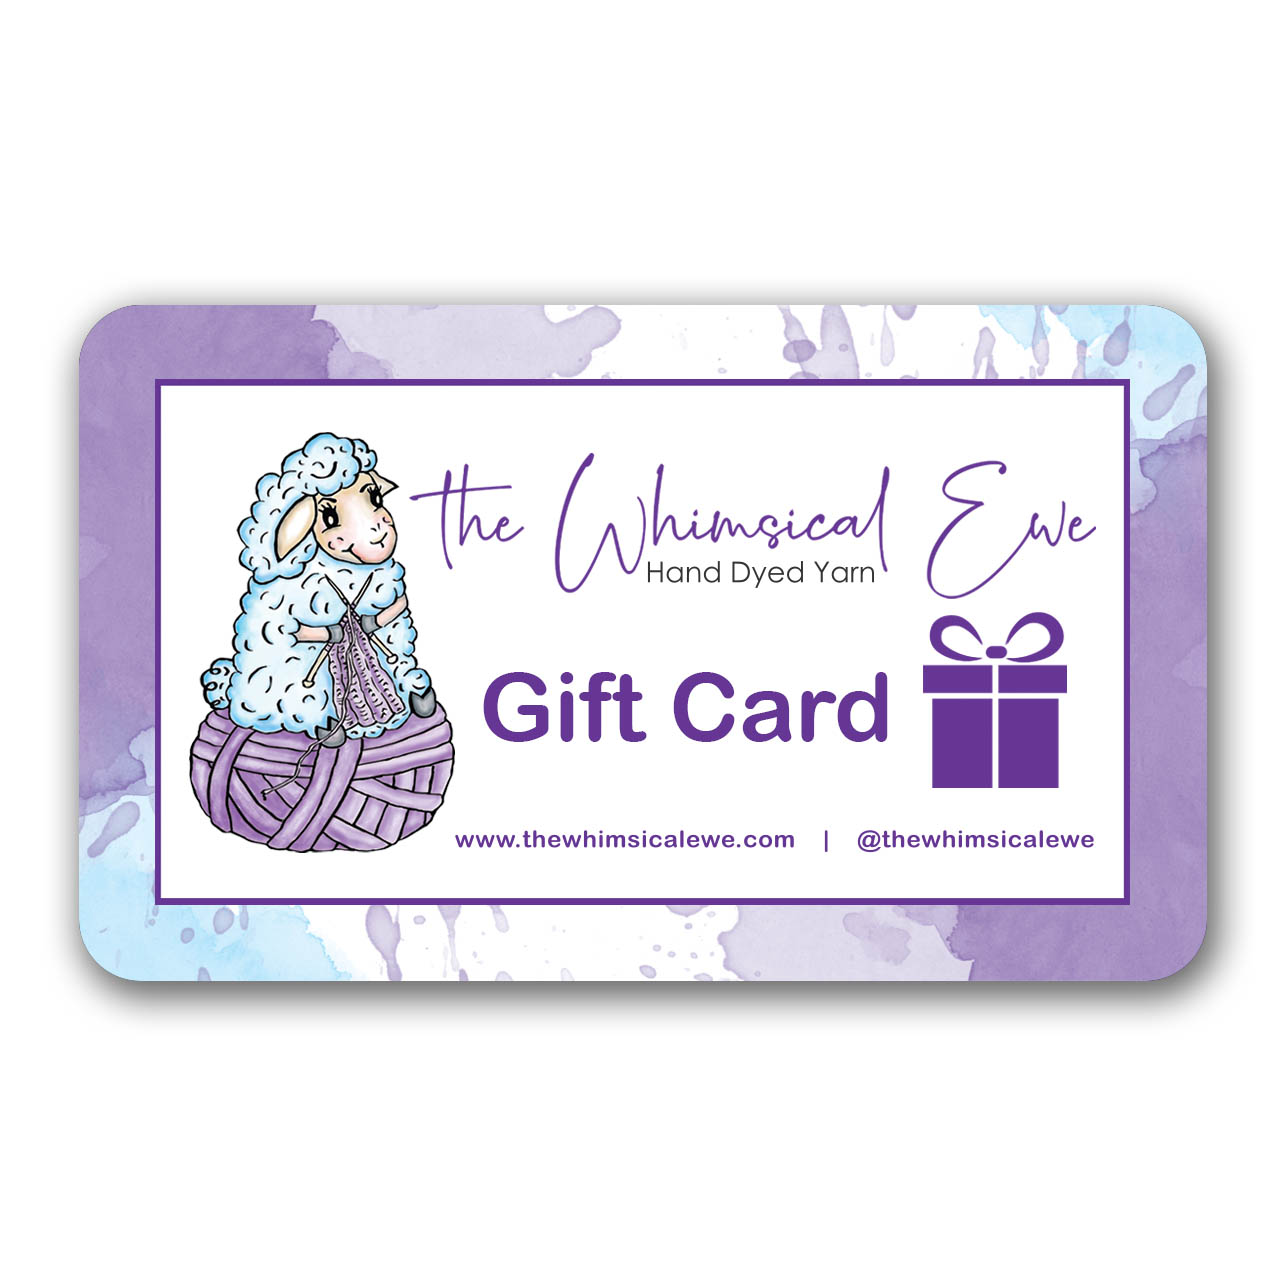 The Blue Ewe Gift Card